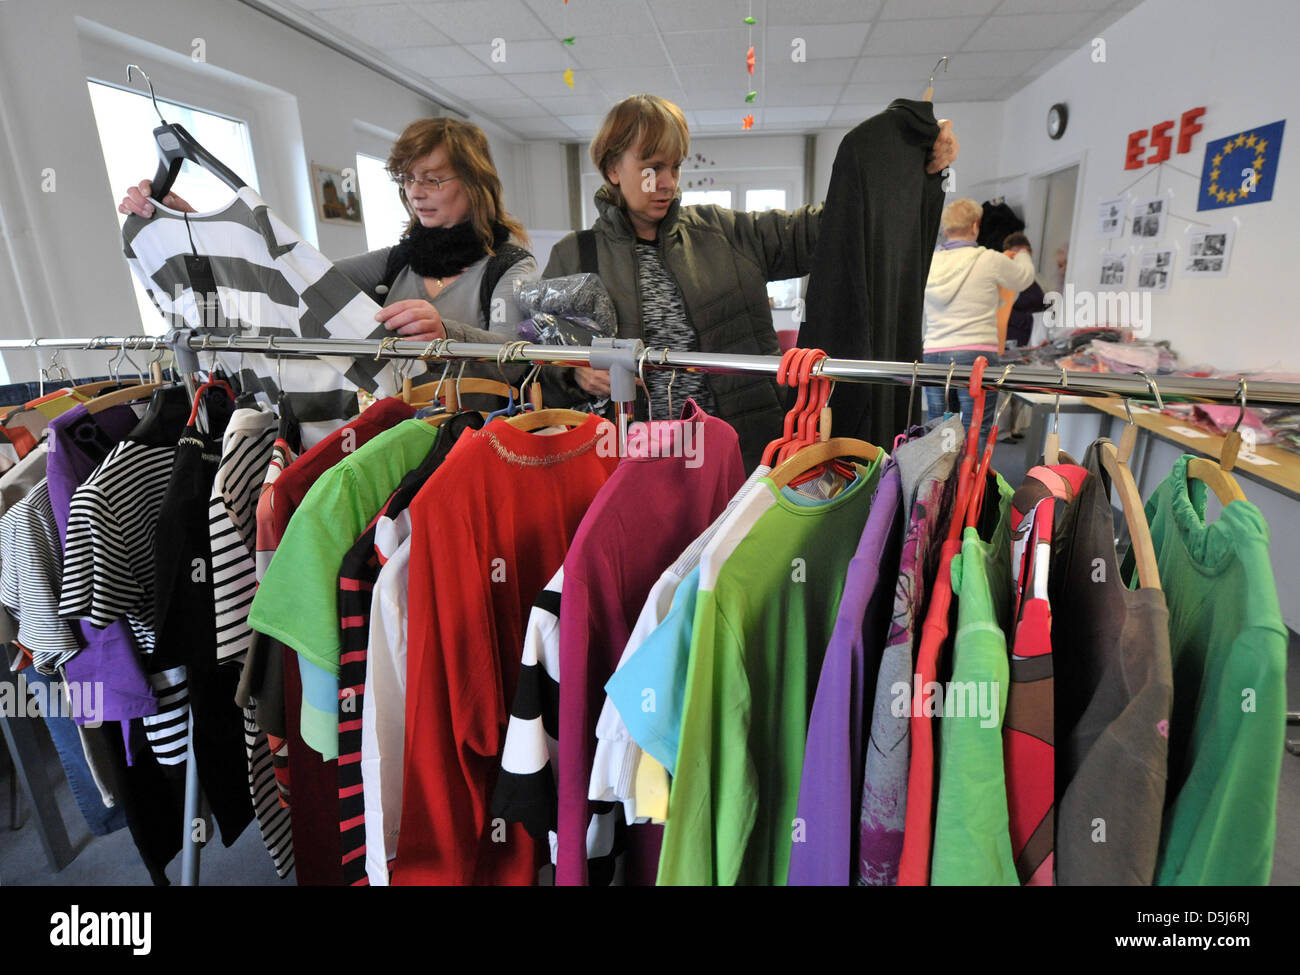 Frau sucht passende Kleidung in der Nahrung und Kleidung Bank Talisa e.v.  (Thüringer Arbeitslosen Initiative - Sozialarbeit) in Erfurt, Deutschland,  6. November 2012. Damen Bekleidung wurde von einer Design-Firma bedeutete  für alleinerziehende